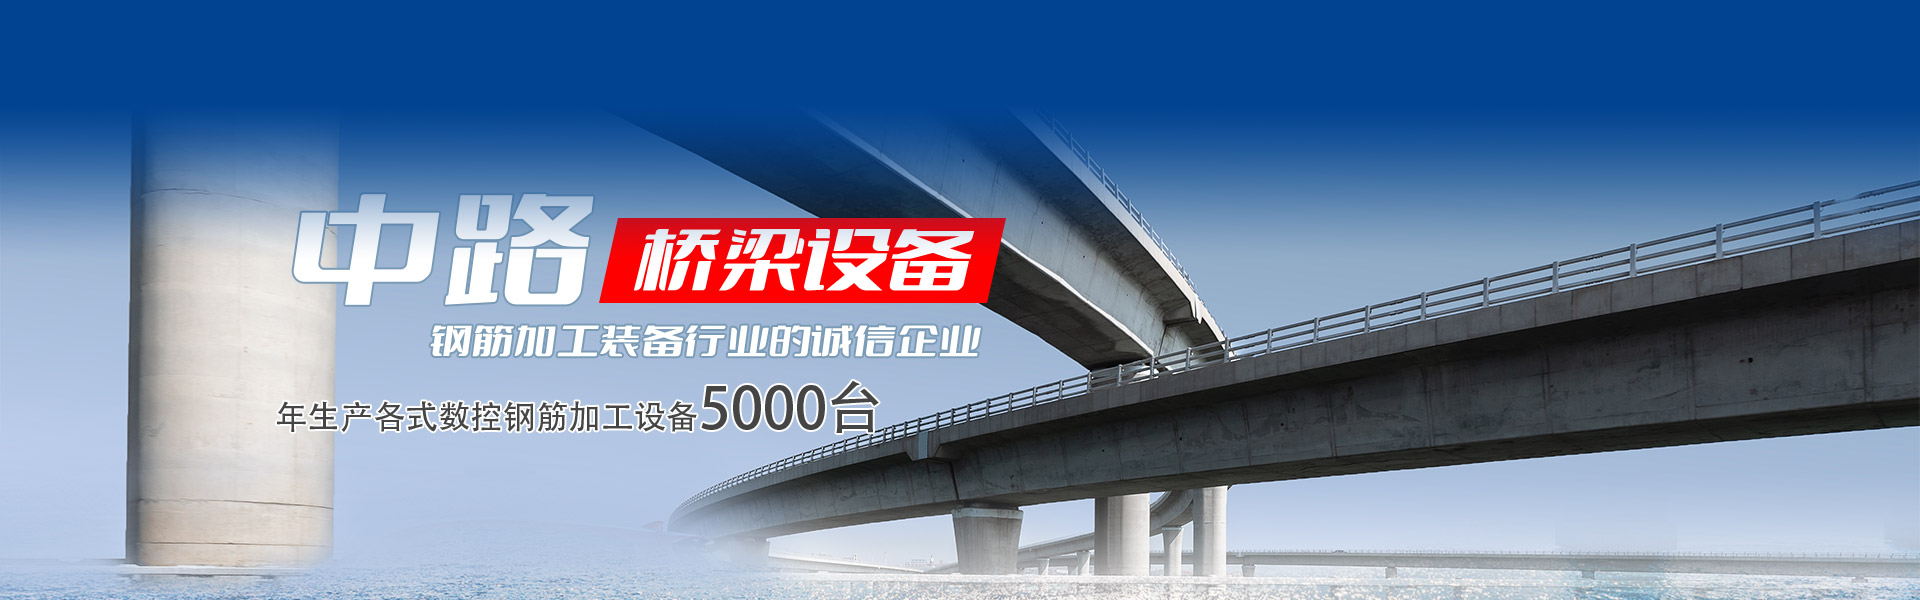 山东j9九游会桥梁设置装备摆设有限公司